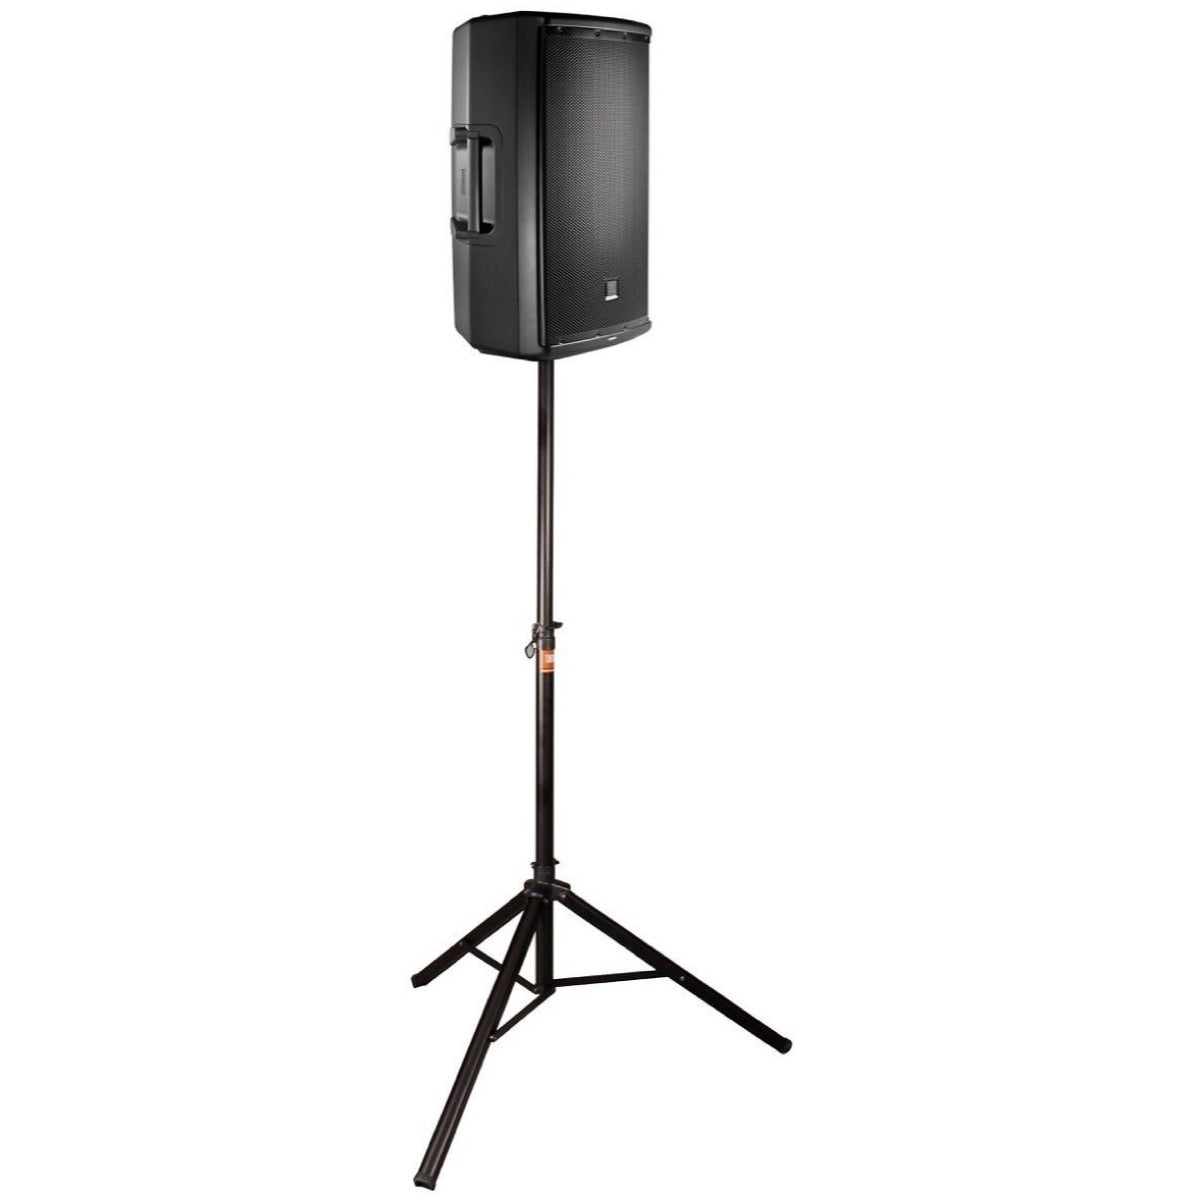 JBL TRIPOD-MA Manual Height Adjust Speaker Stand